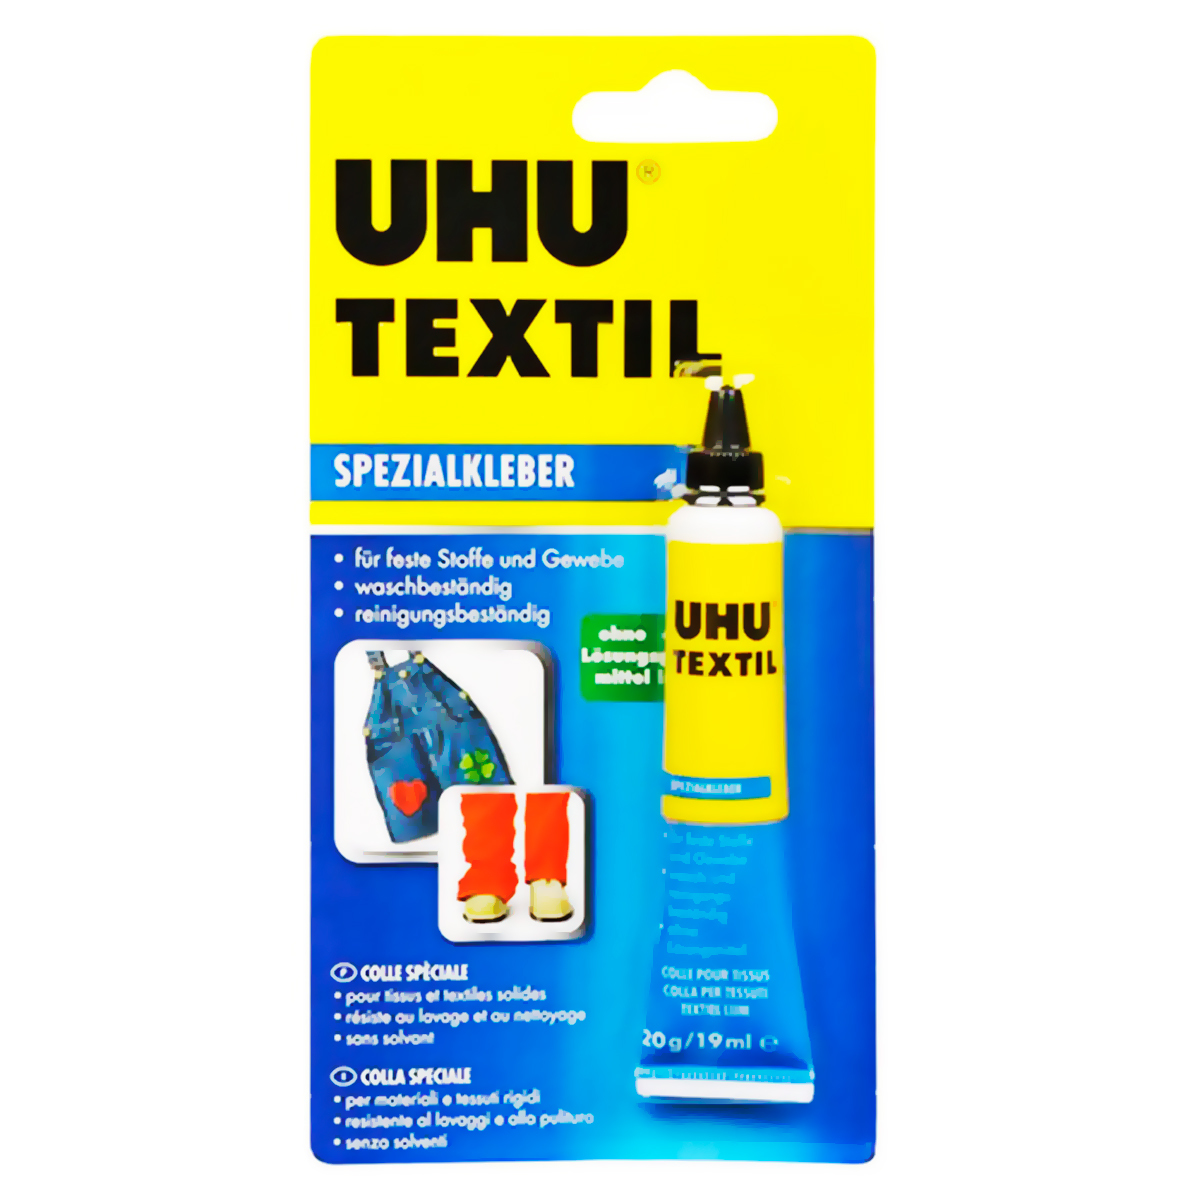 UHU para Todo Uso Pegamento 7ml Extra Fuerte Adhesivo Transparente -  Paquete De